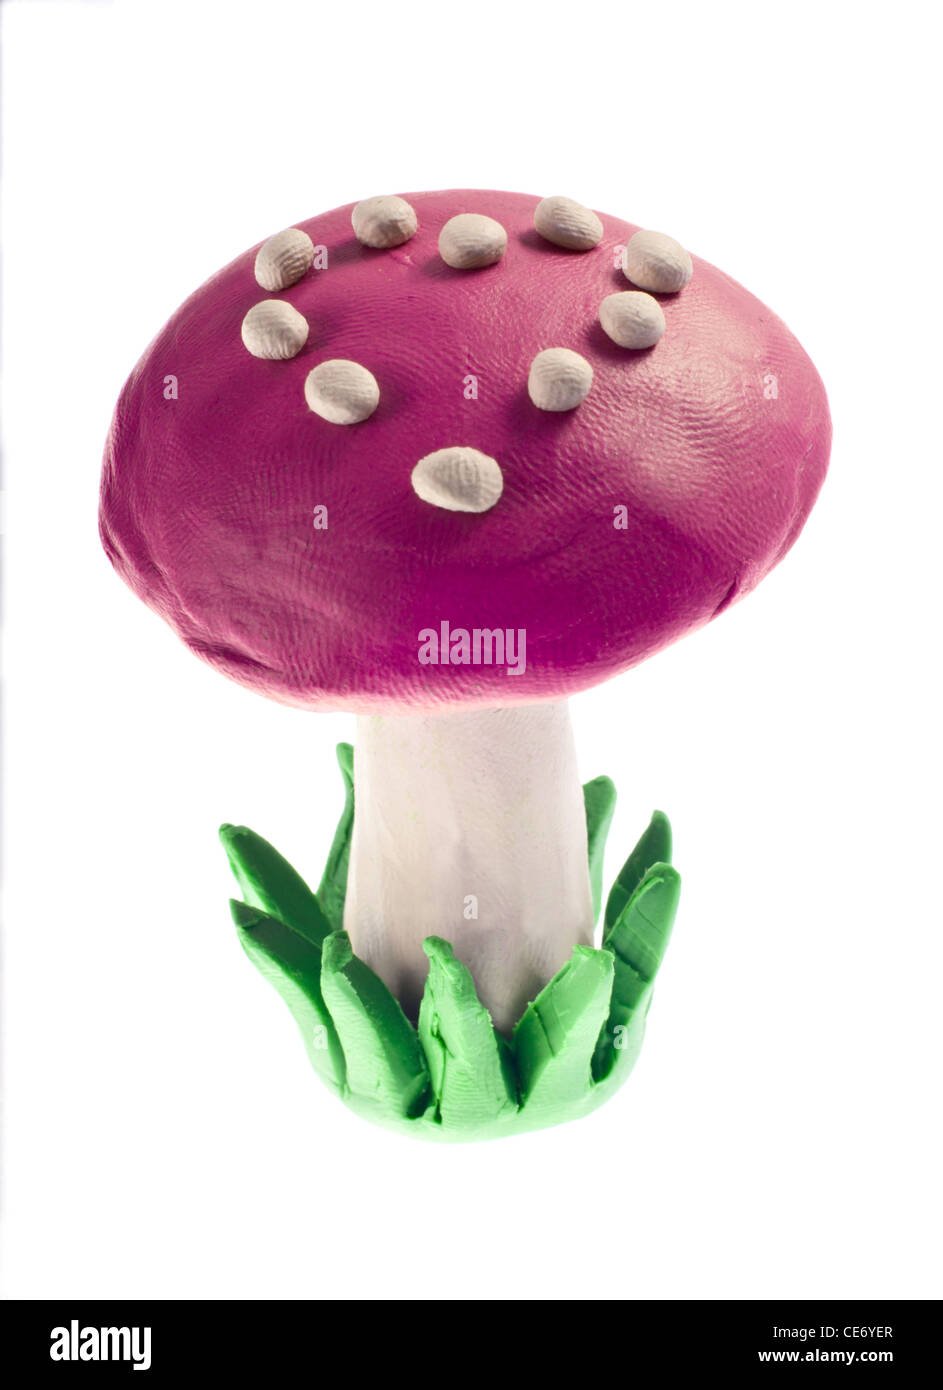 Съедобные грибы из пластилина